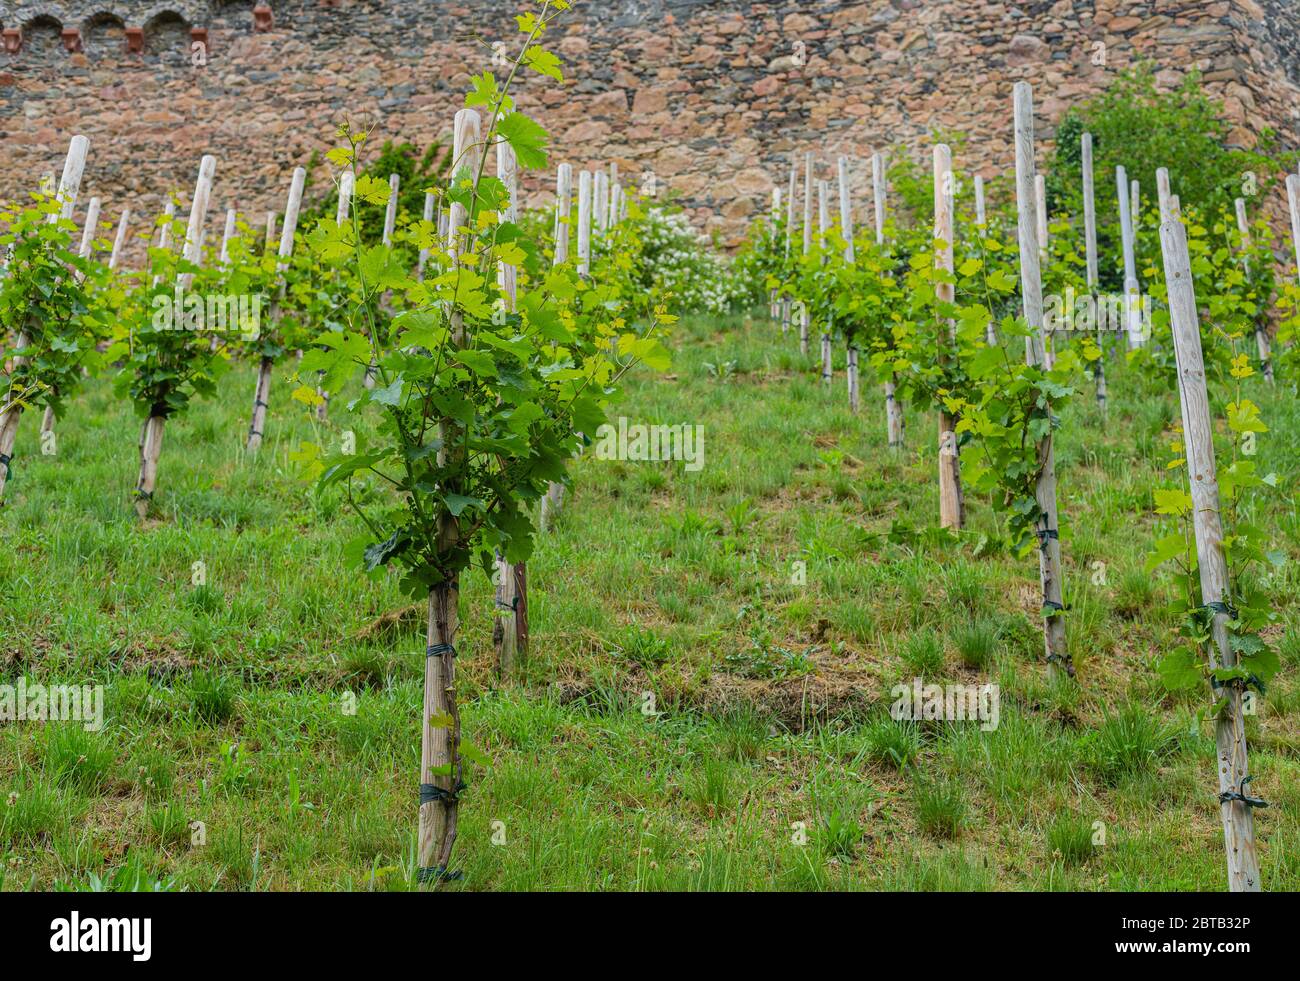 Ein kleiner Weinberg am Hang unterhalb der Burg. Junge Traubensträucher. Weinproduktion. Süddeutschland. Junge Triebe und Blätter. Stockfoto